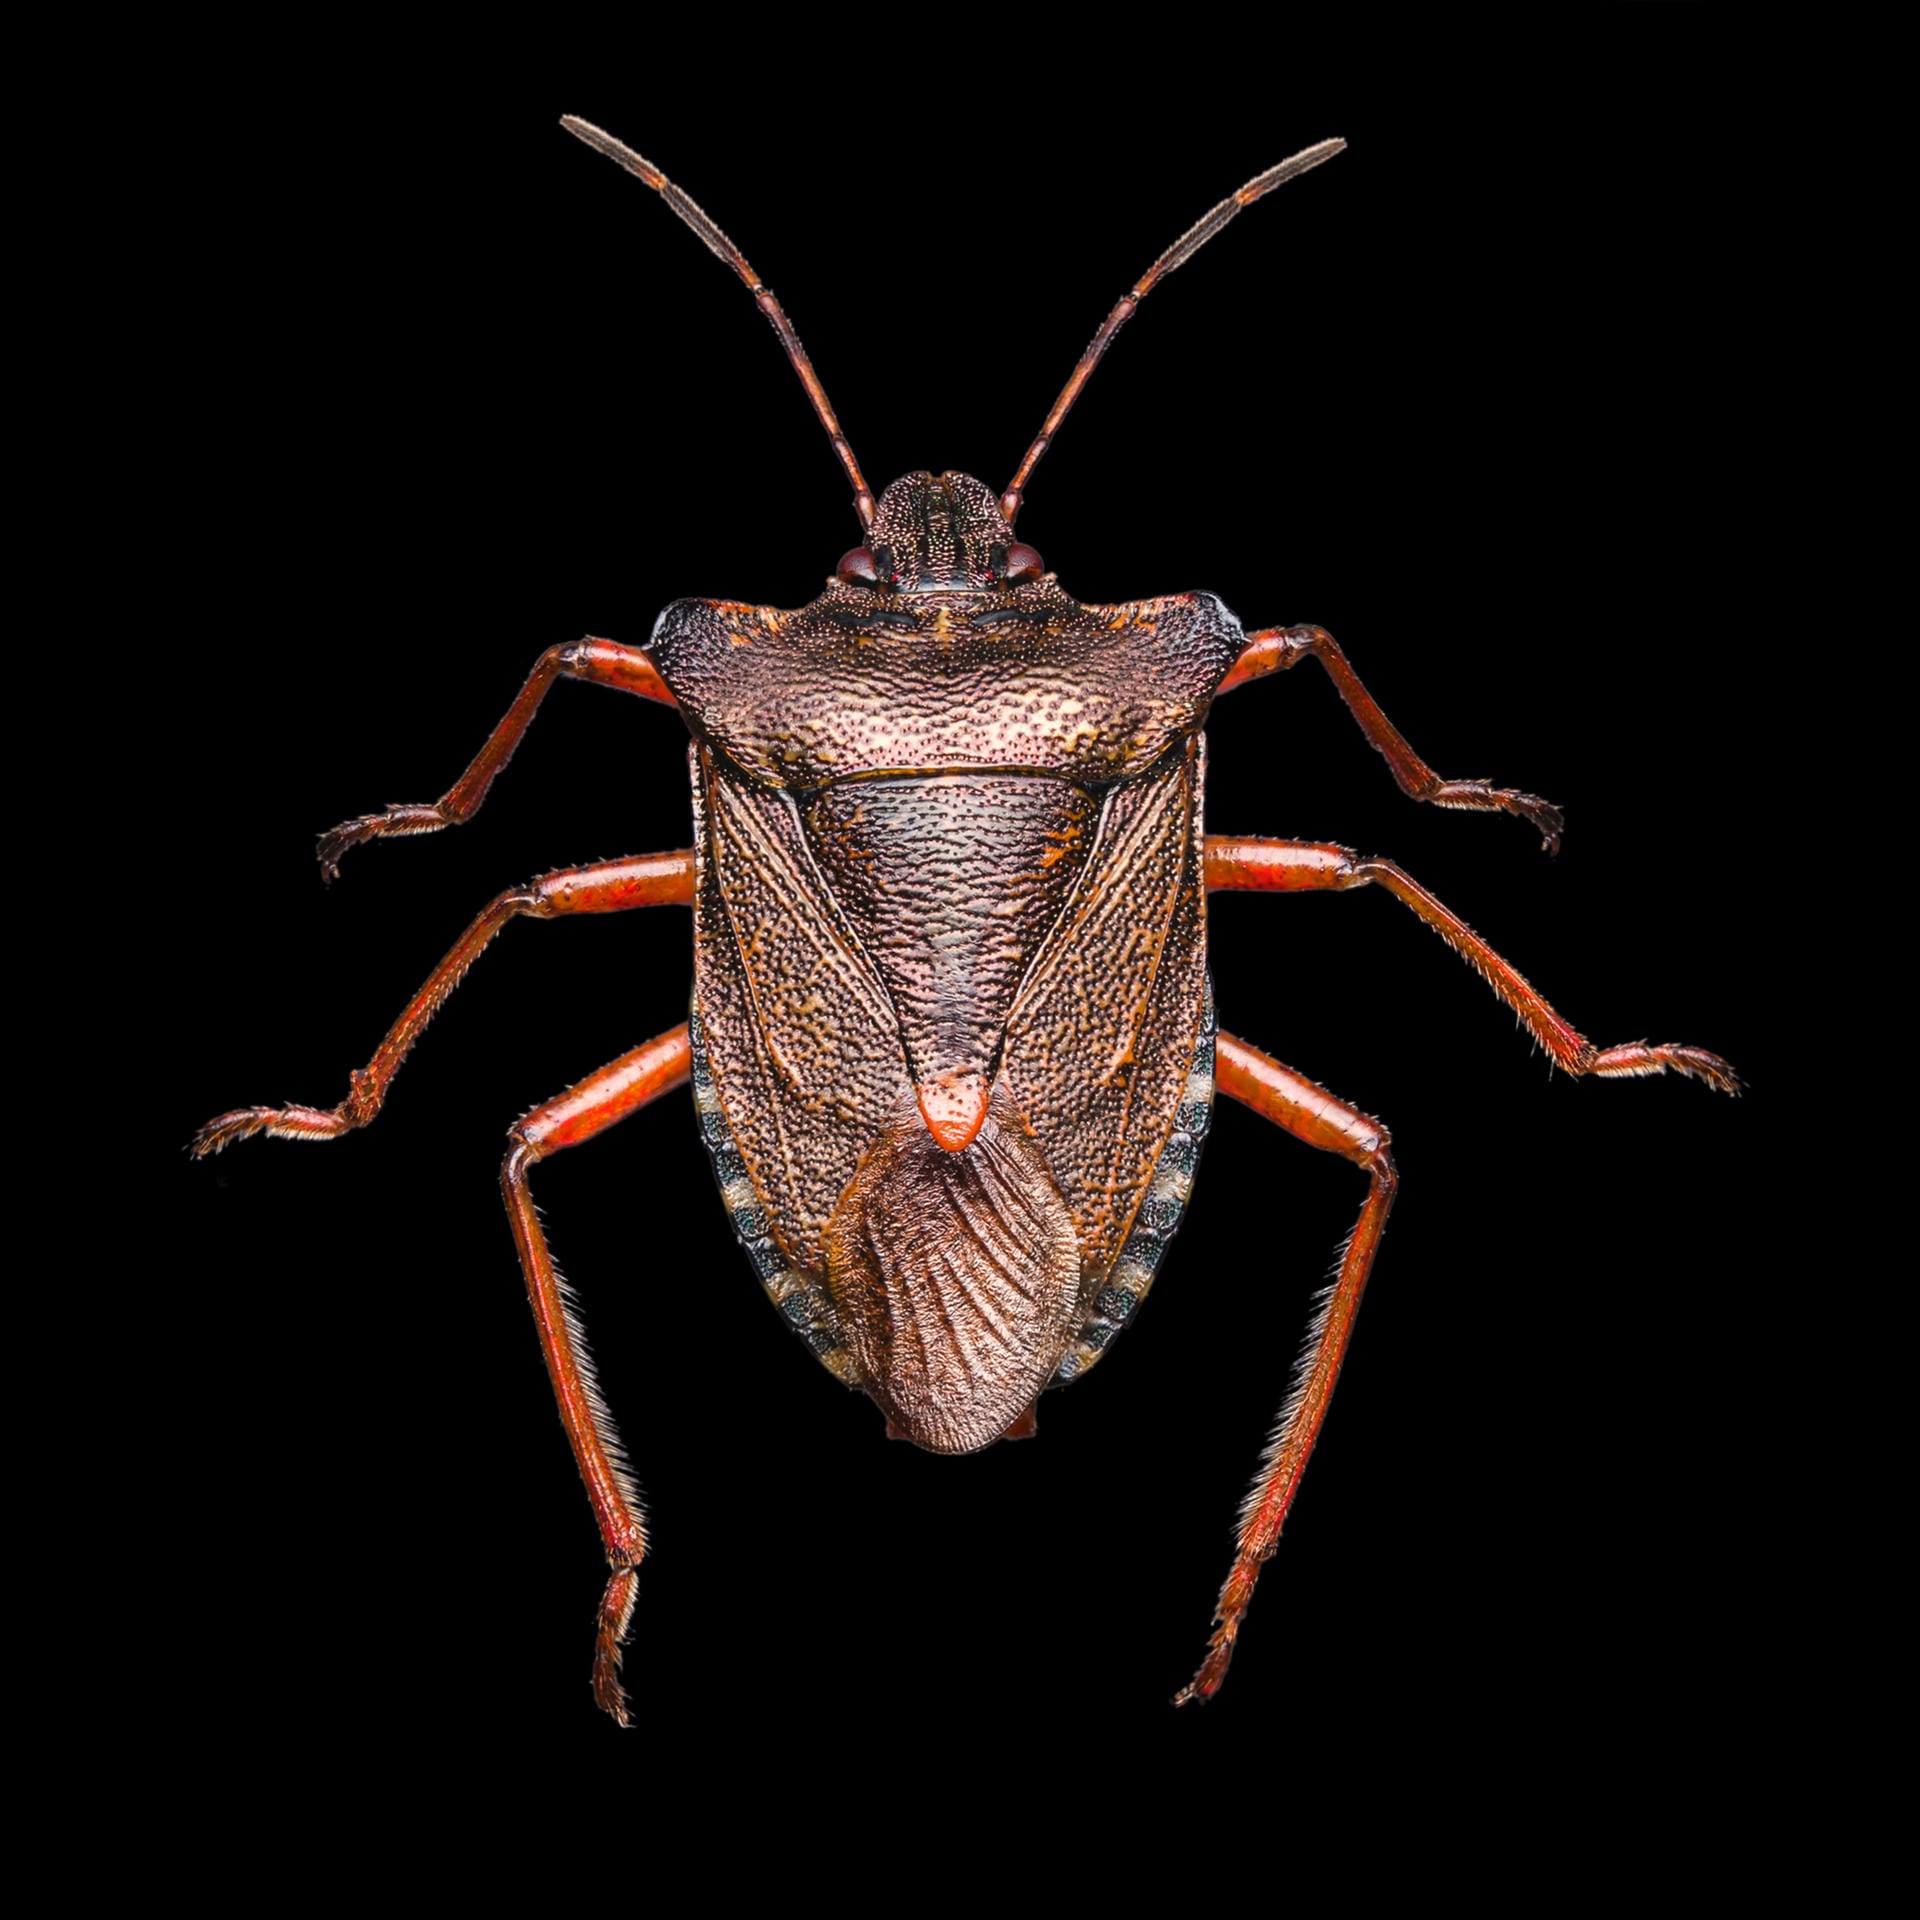 Harte Schale: Diese Mikrofotografie zeigt die Struktur des Panzers eines Käfers.